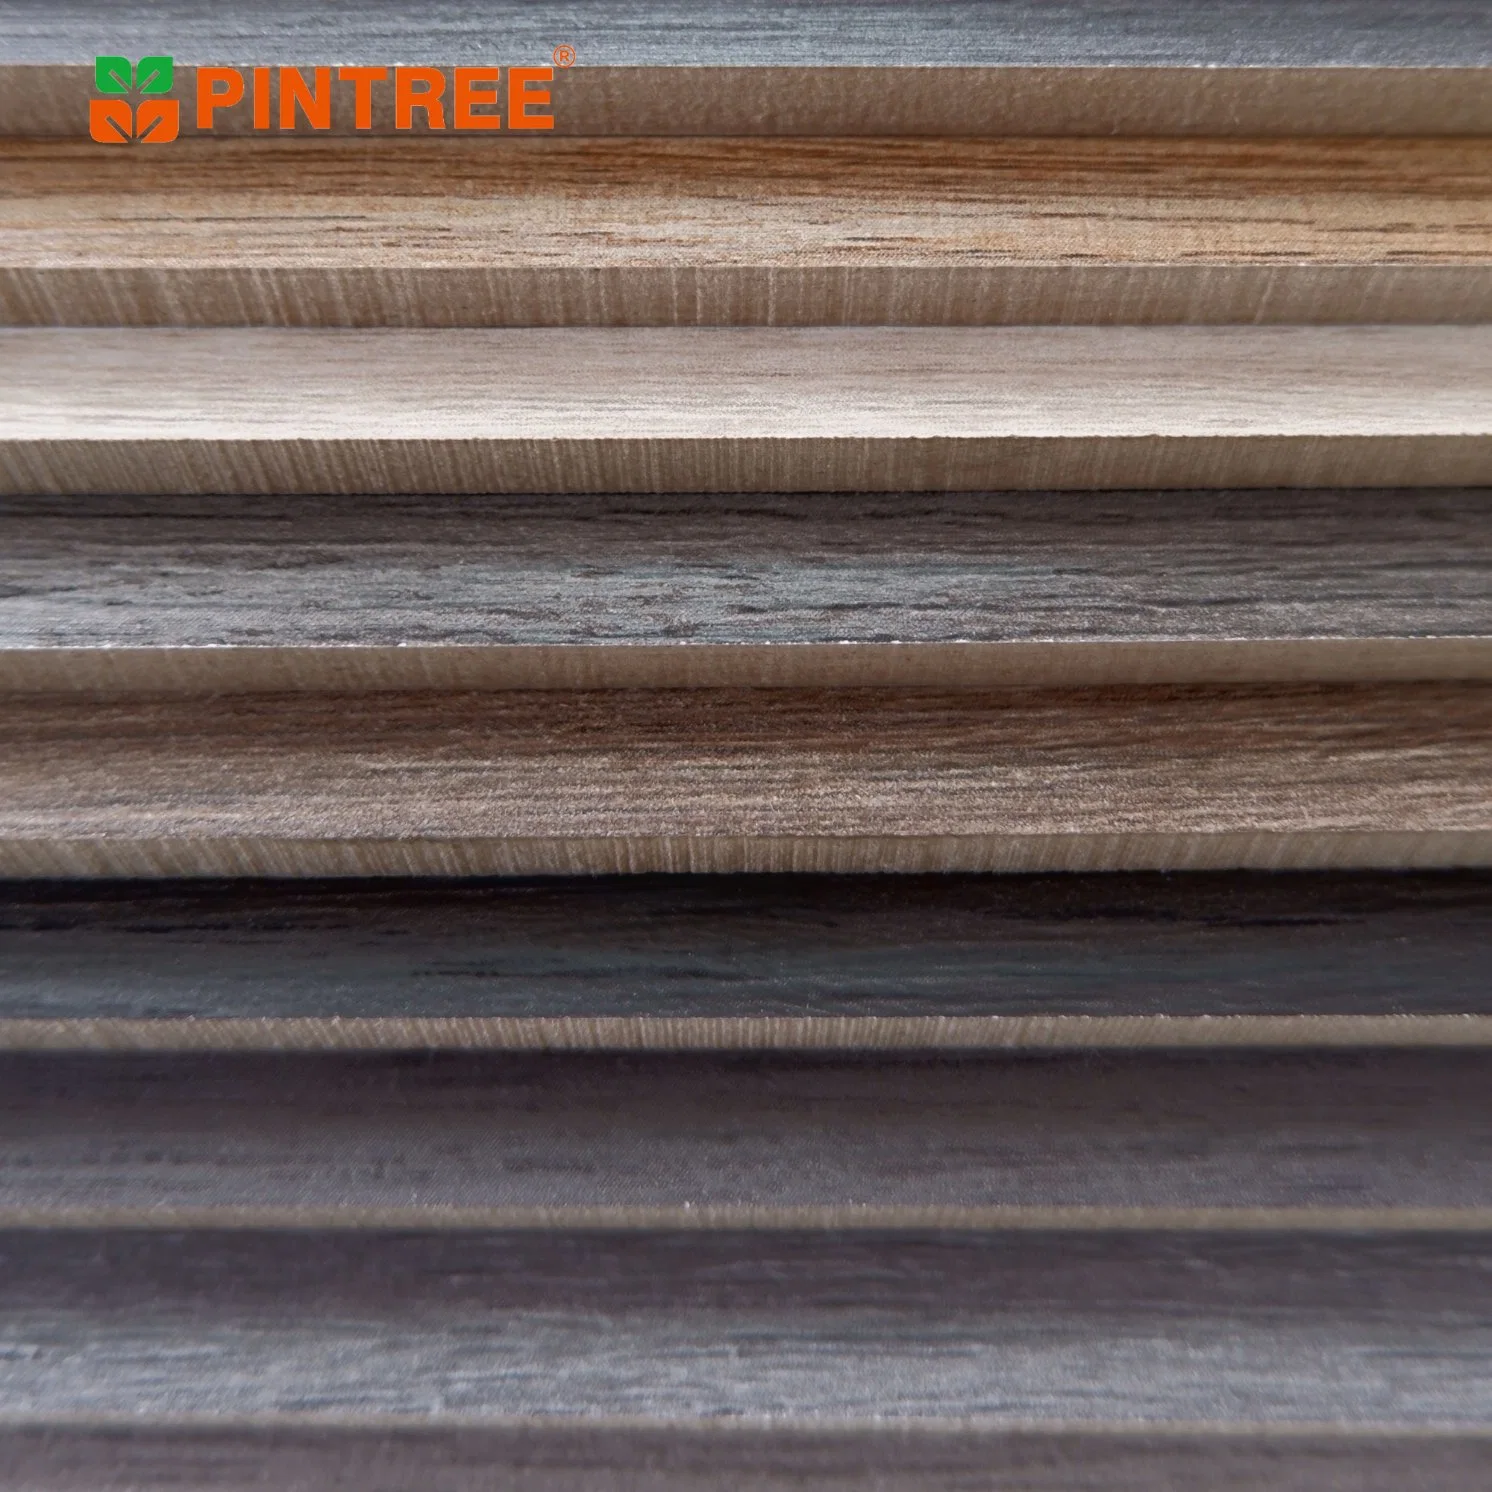 9-25мм толщину ламината из твердых пород дерева меламина лист фанеры древесины сосны поверхности